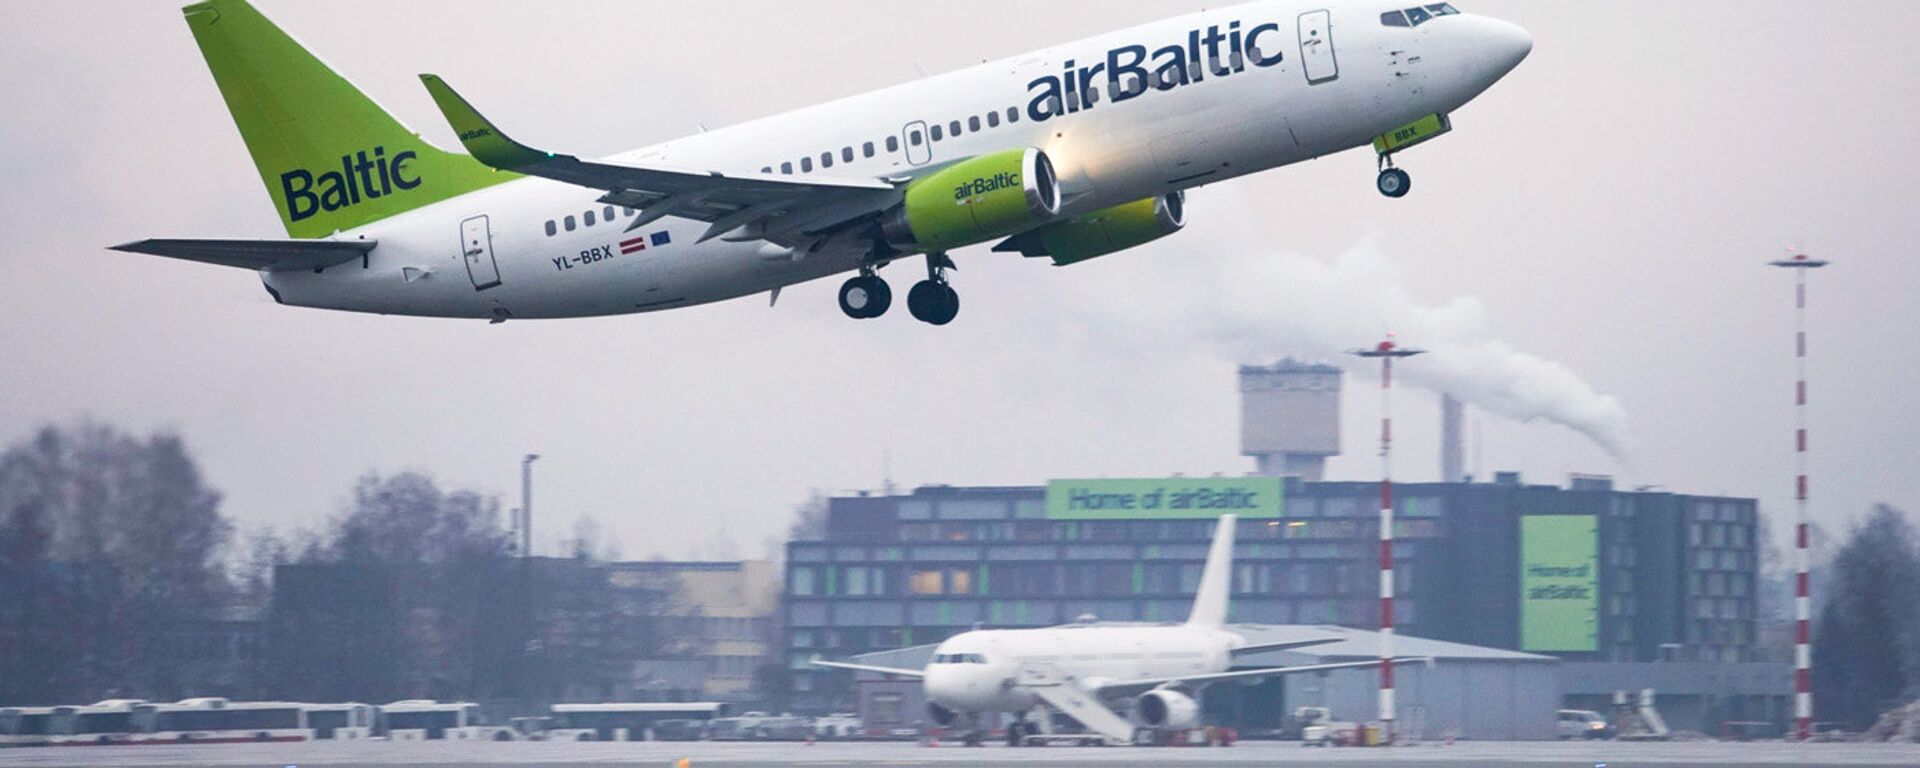 Взлет самолета Boeing 737-36Q авиакомпании аirBaltic из аэропорта Рига - Sputnik Латвия, 1920, 04.12.2021